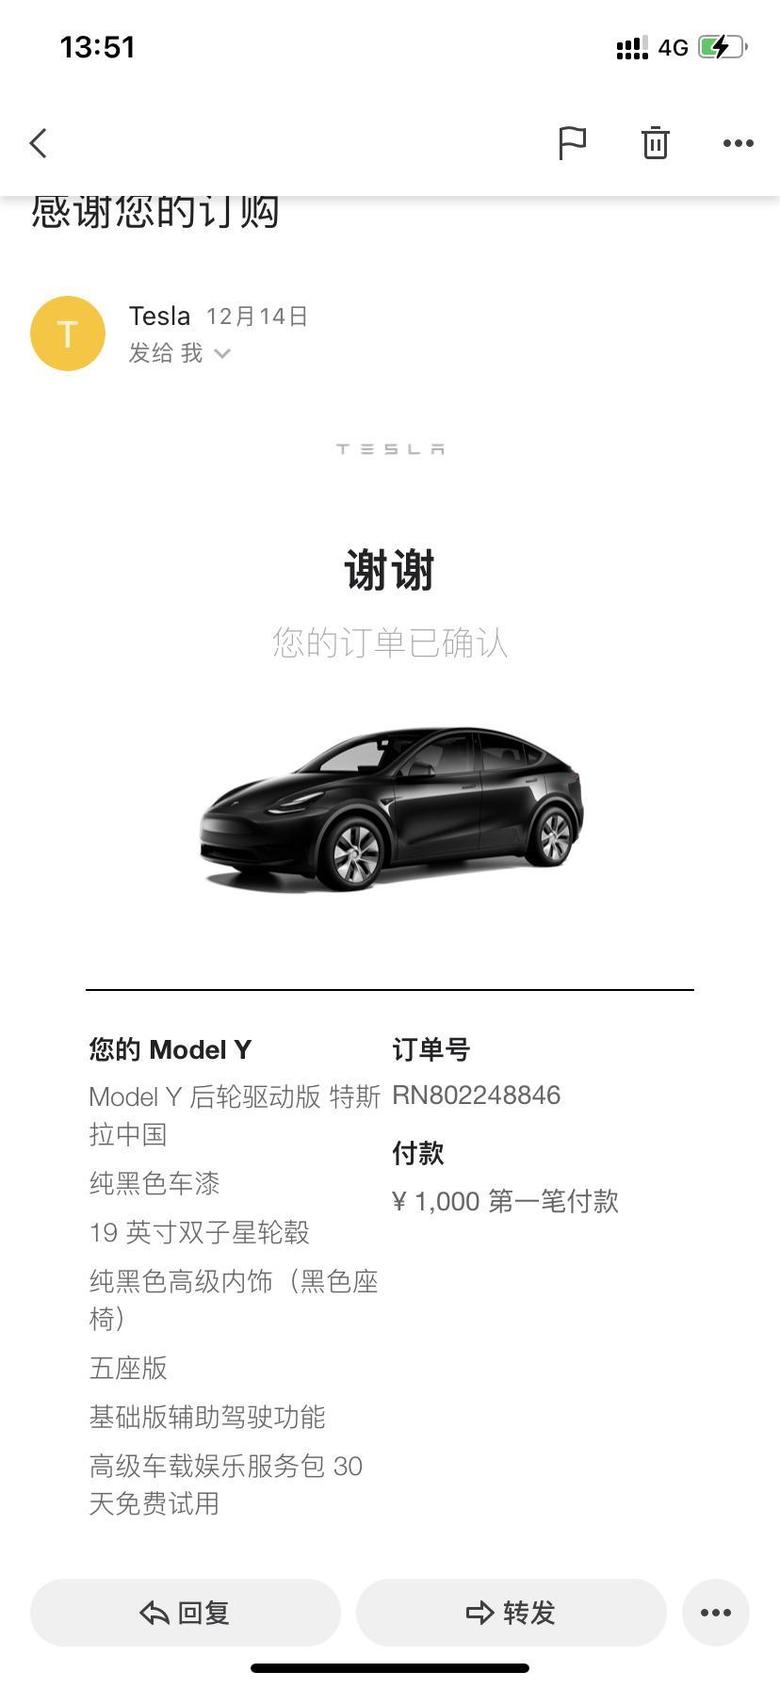 model y 上海224等车想问一下，20寸轮毂有必要选吗会对续航有影响吗